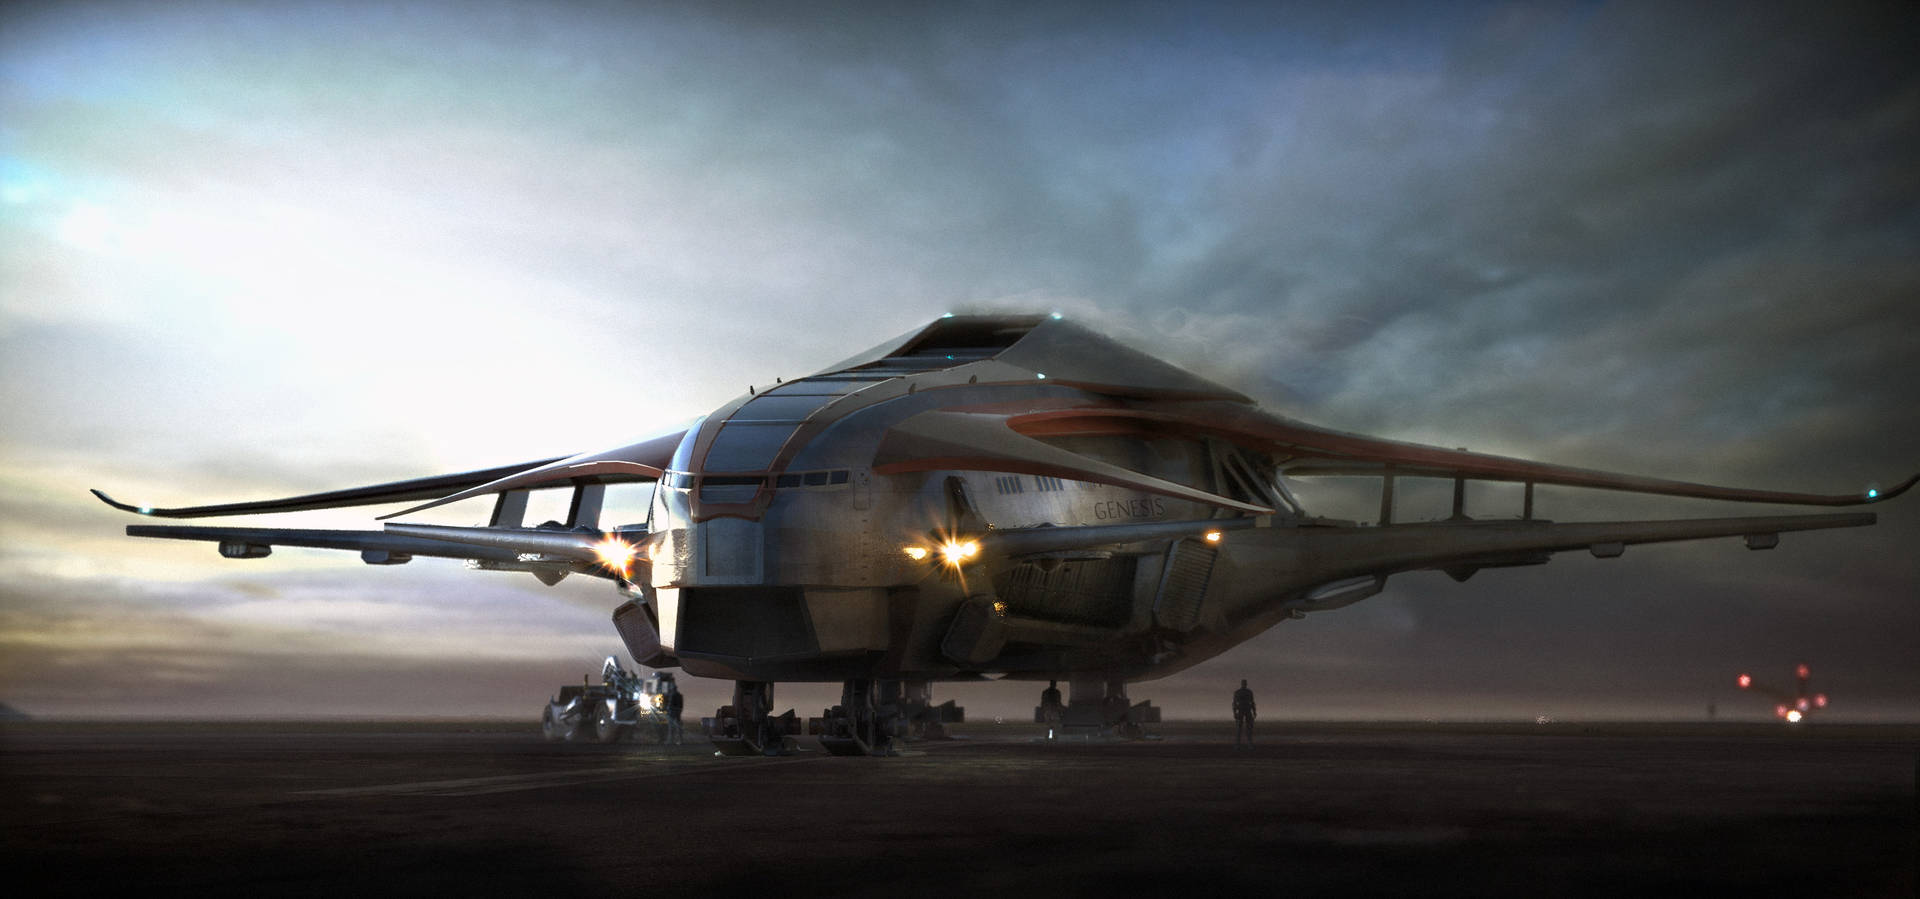 Spacexstarship: El Futuro De La Colonización Humana Fondo de pantalla